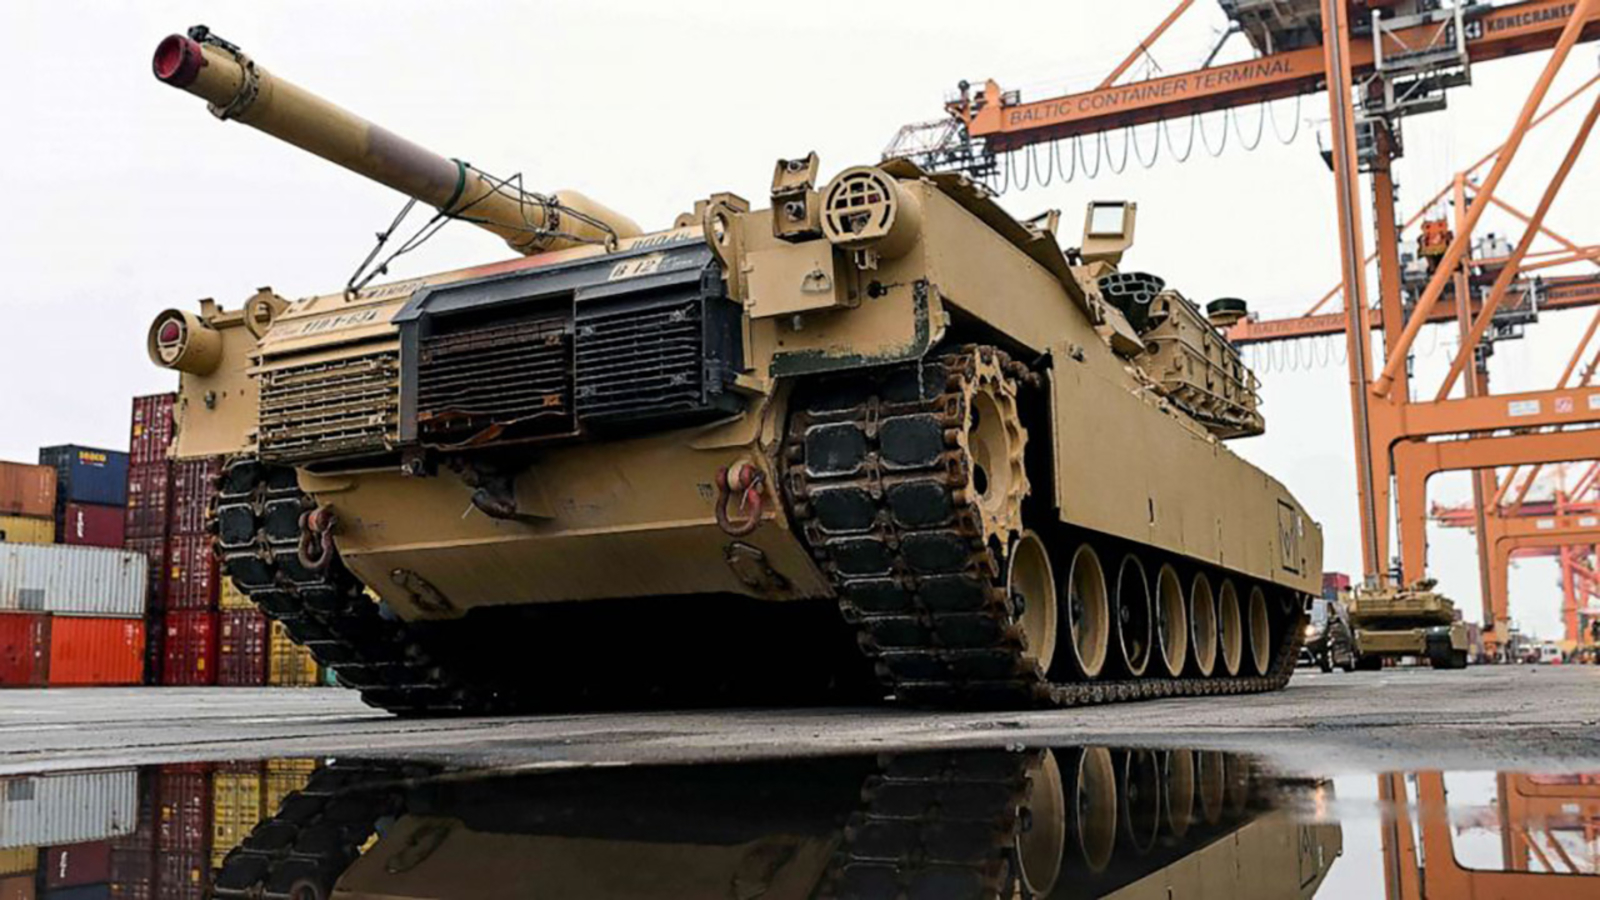 President Biden approves sending 31 Abrams tanks to Ukraine